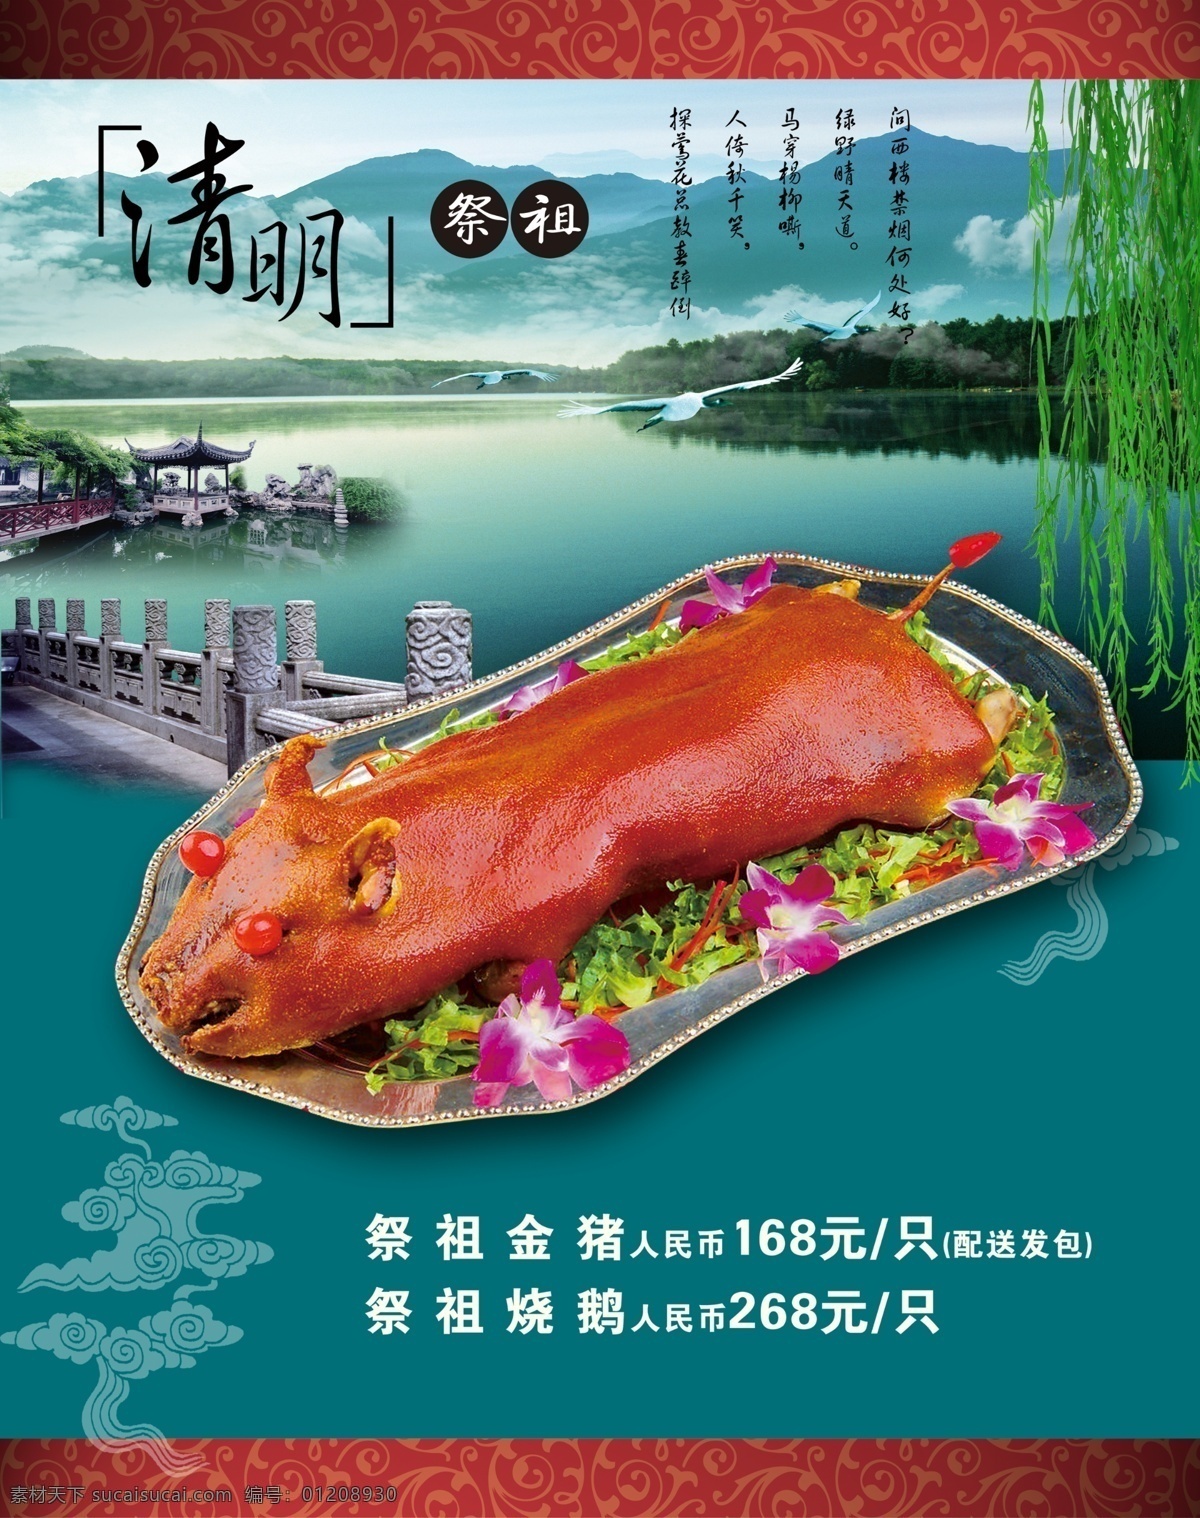 烤乳猪 清明节 活动海报 特色美食 美食海报 清明海报 资源共享